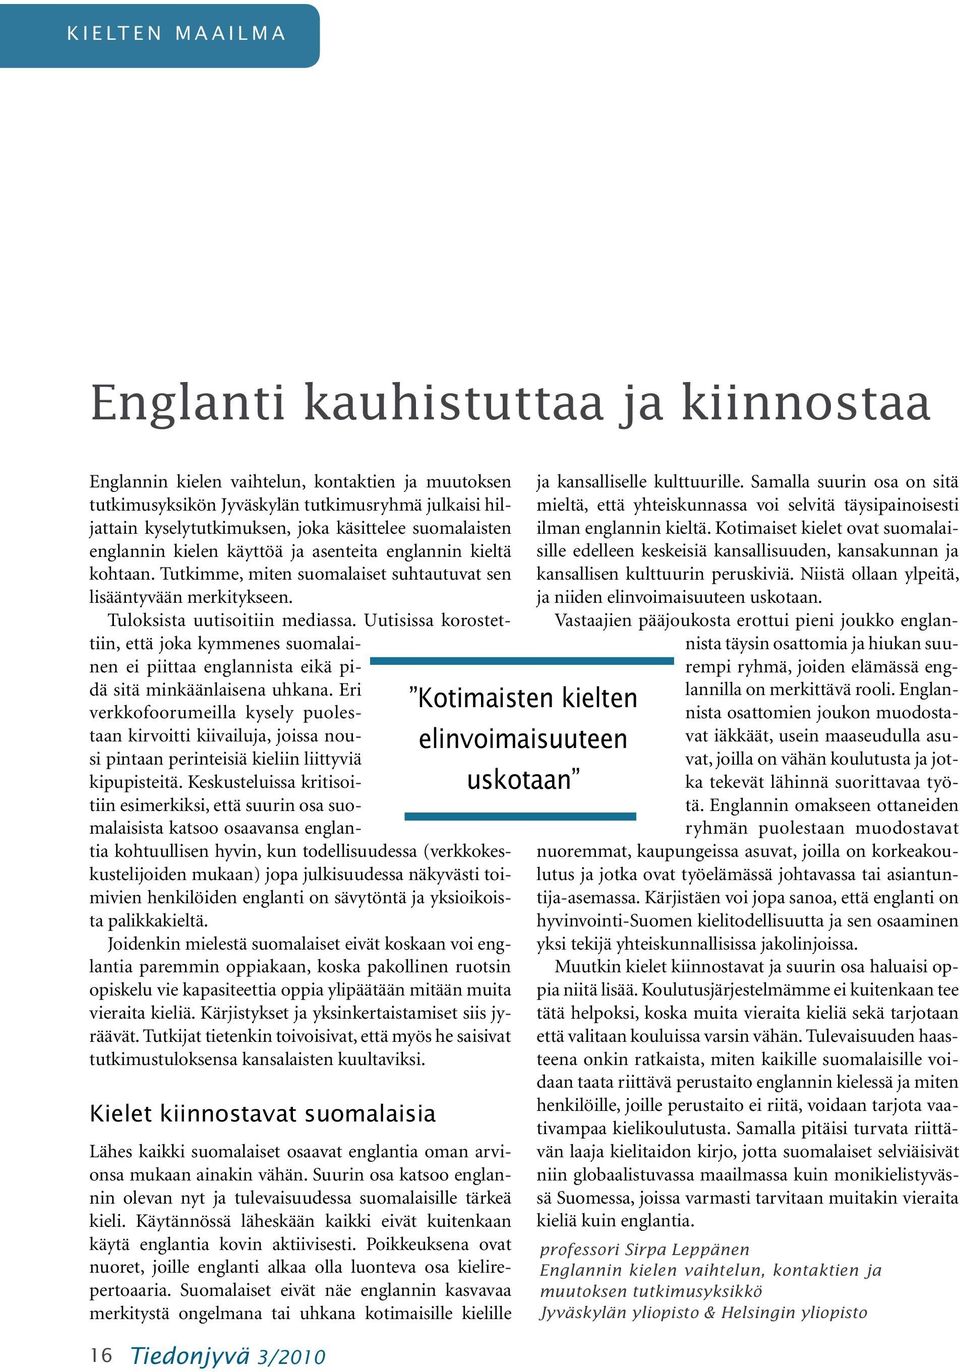 Uutisissa korostettiin, että joka kymmenes suomalainen ei piittaa englannista eikä pidä sitä minkäänlaisena uhkana.